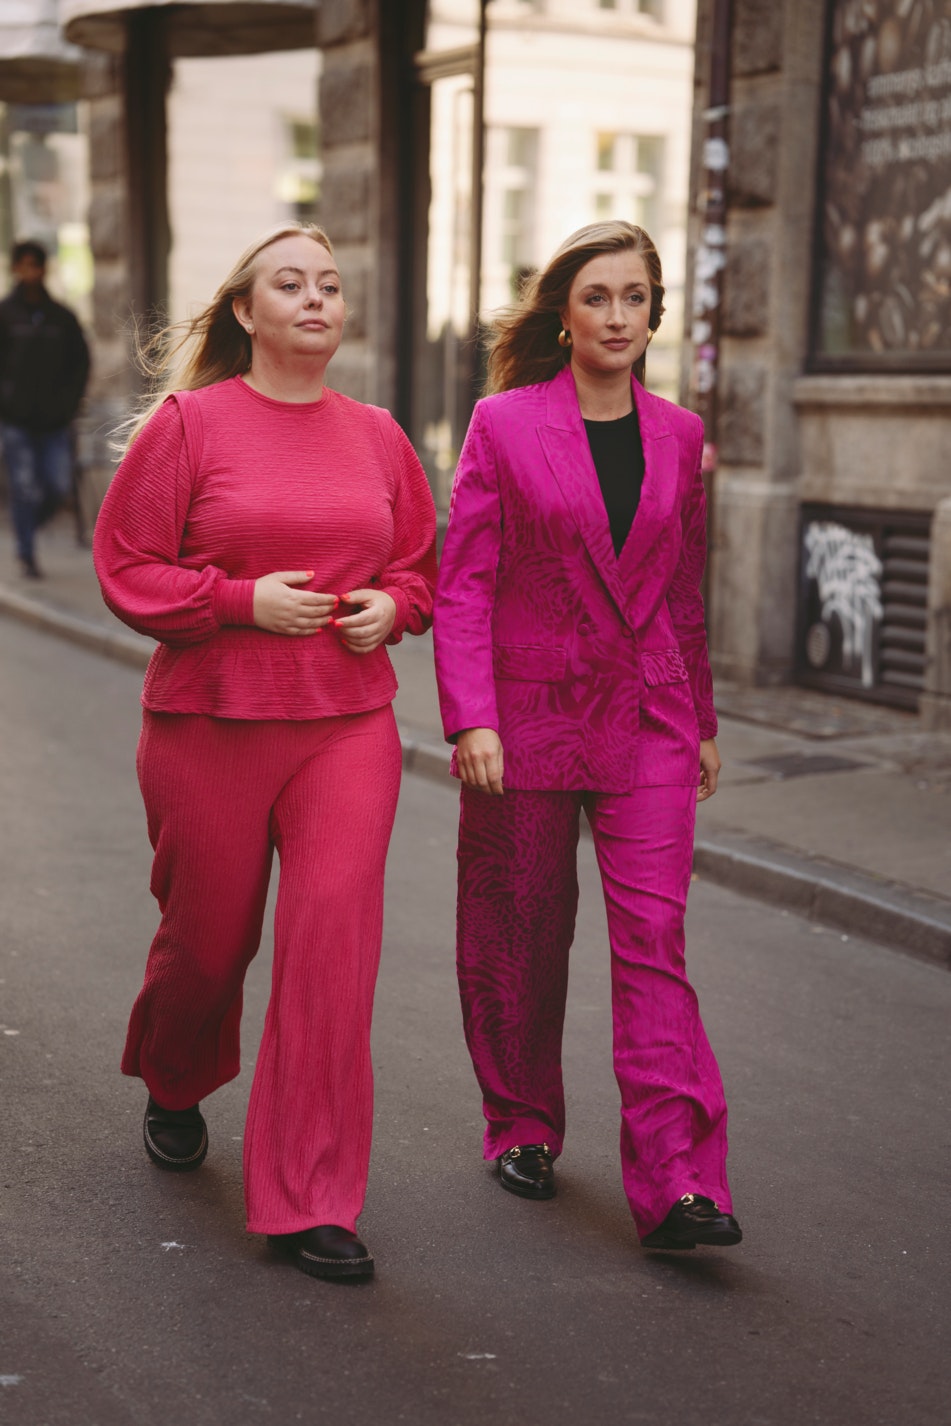 Maria Gudme og Camilla Søe går sammen på en gade. Maria Gudme har hænderne samlet foran sig. Hun er i et rødligt sæt, Camilla Søe har et pink jakkesæt på. 